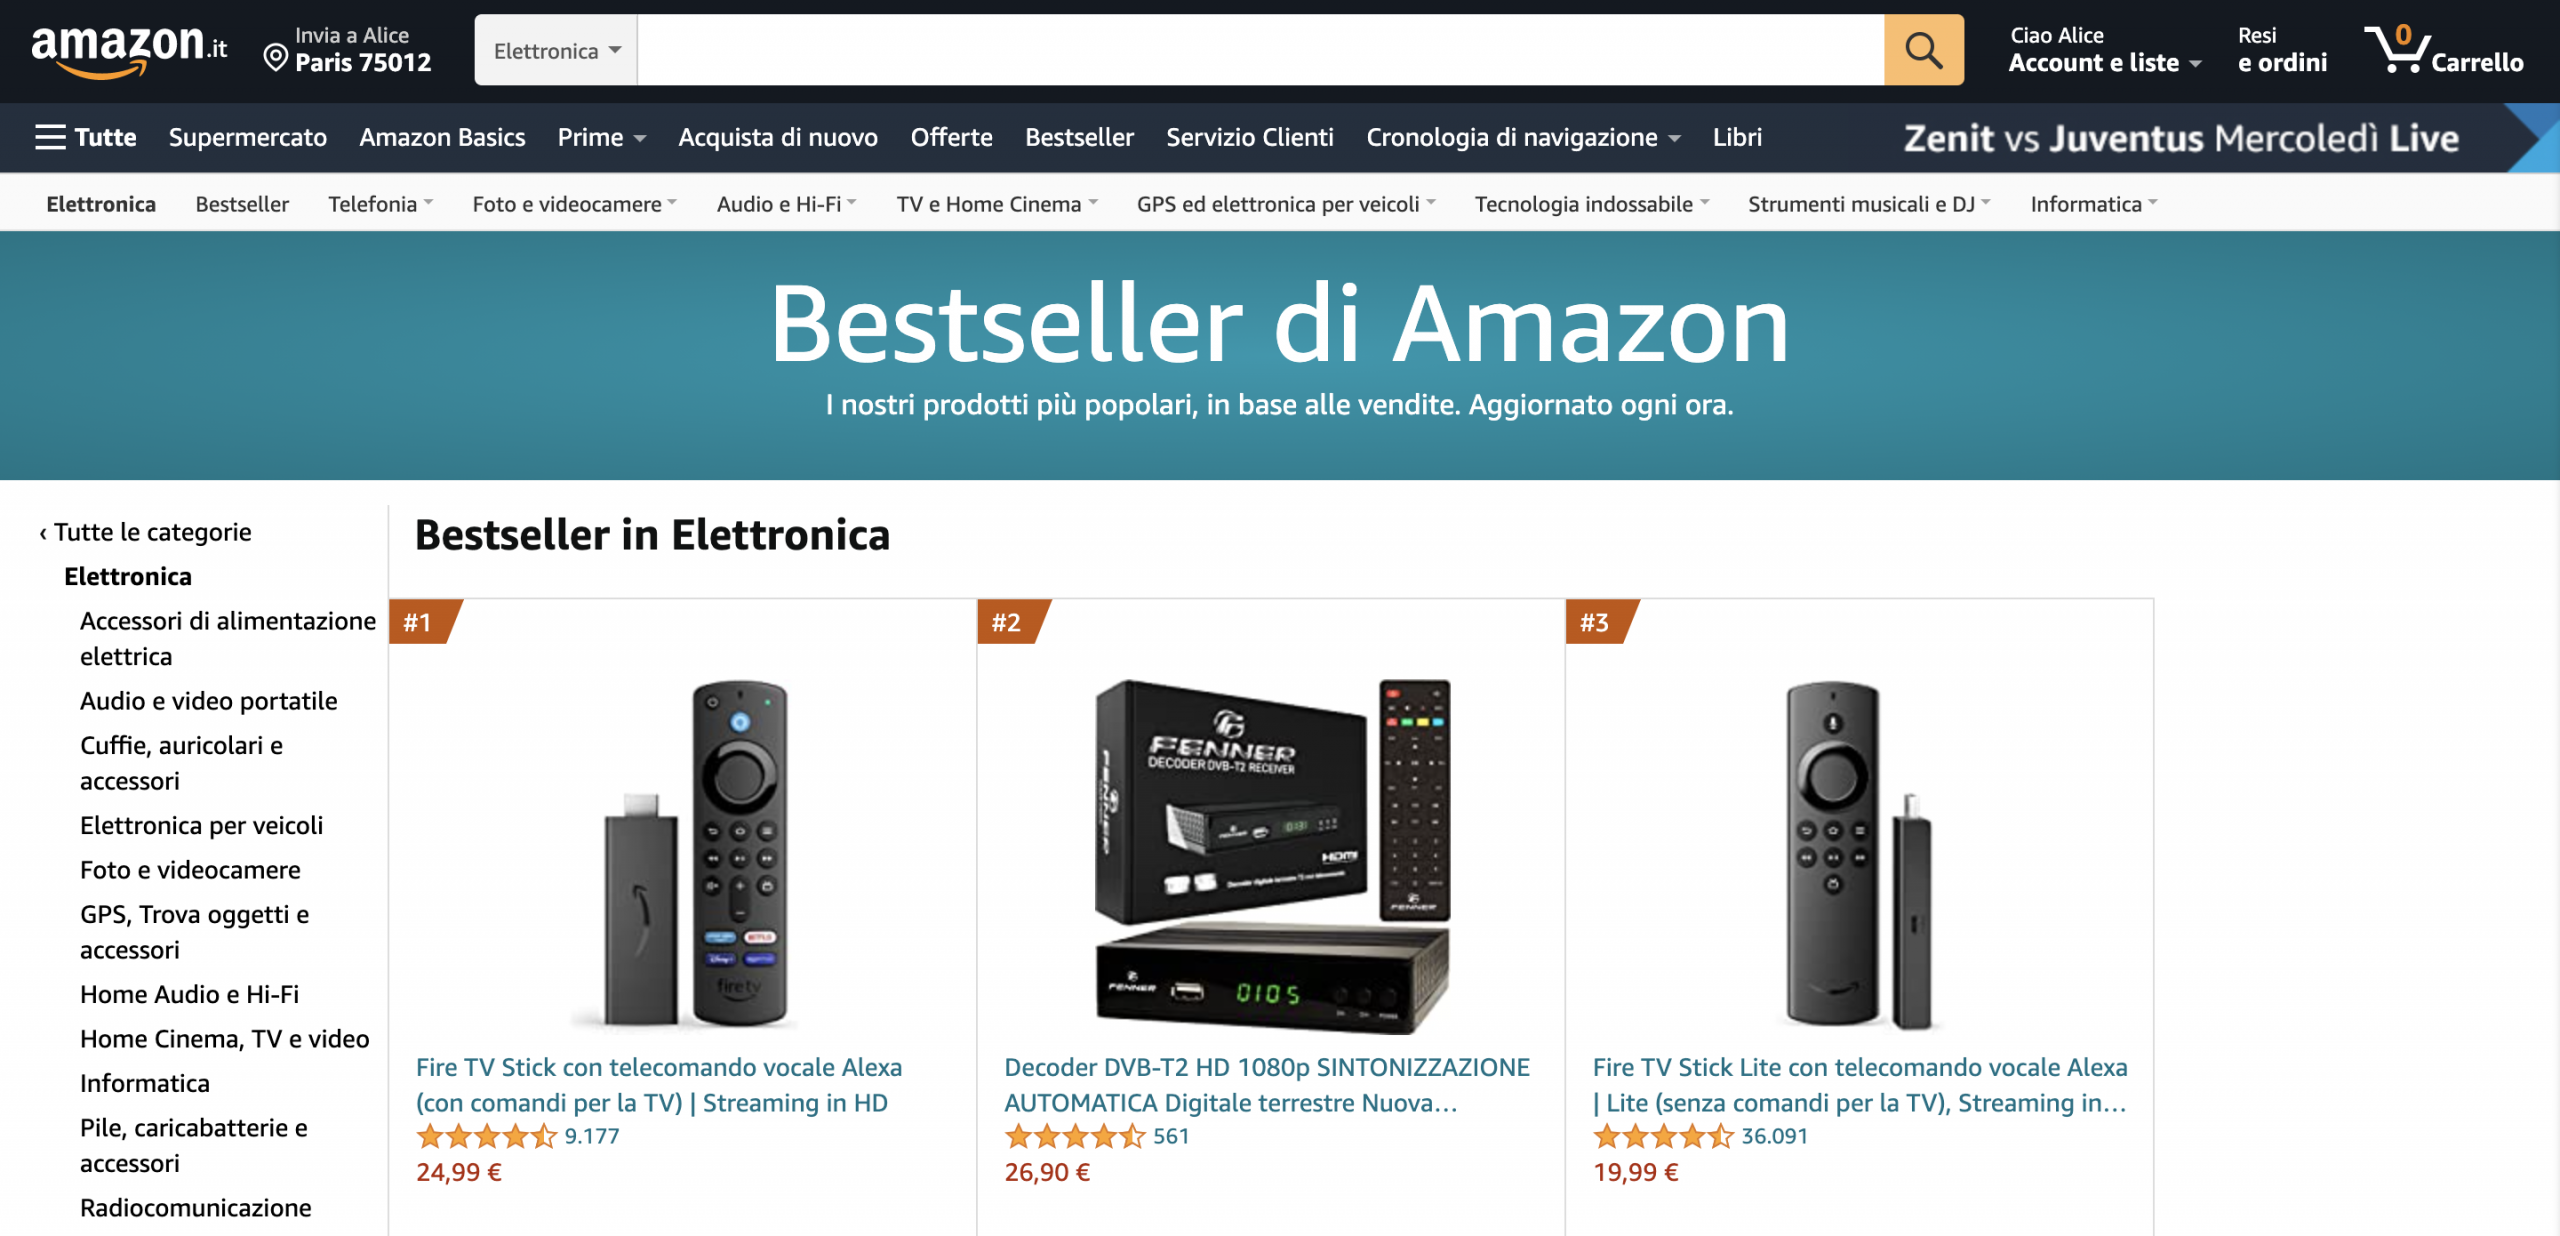 Amazon: indicazione di best seller come tattica di riprova sociale.